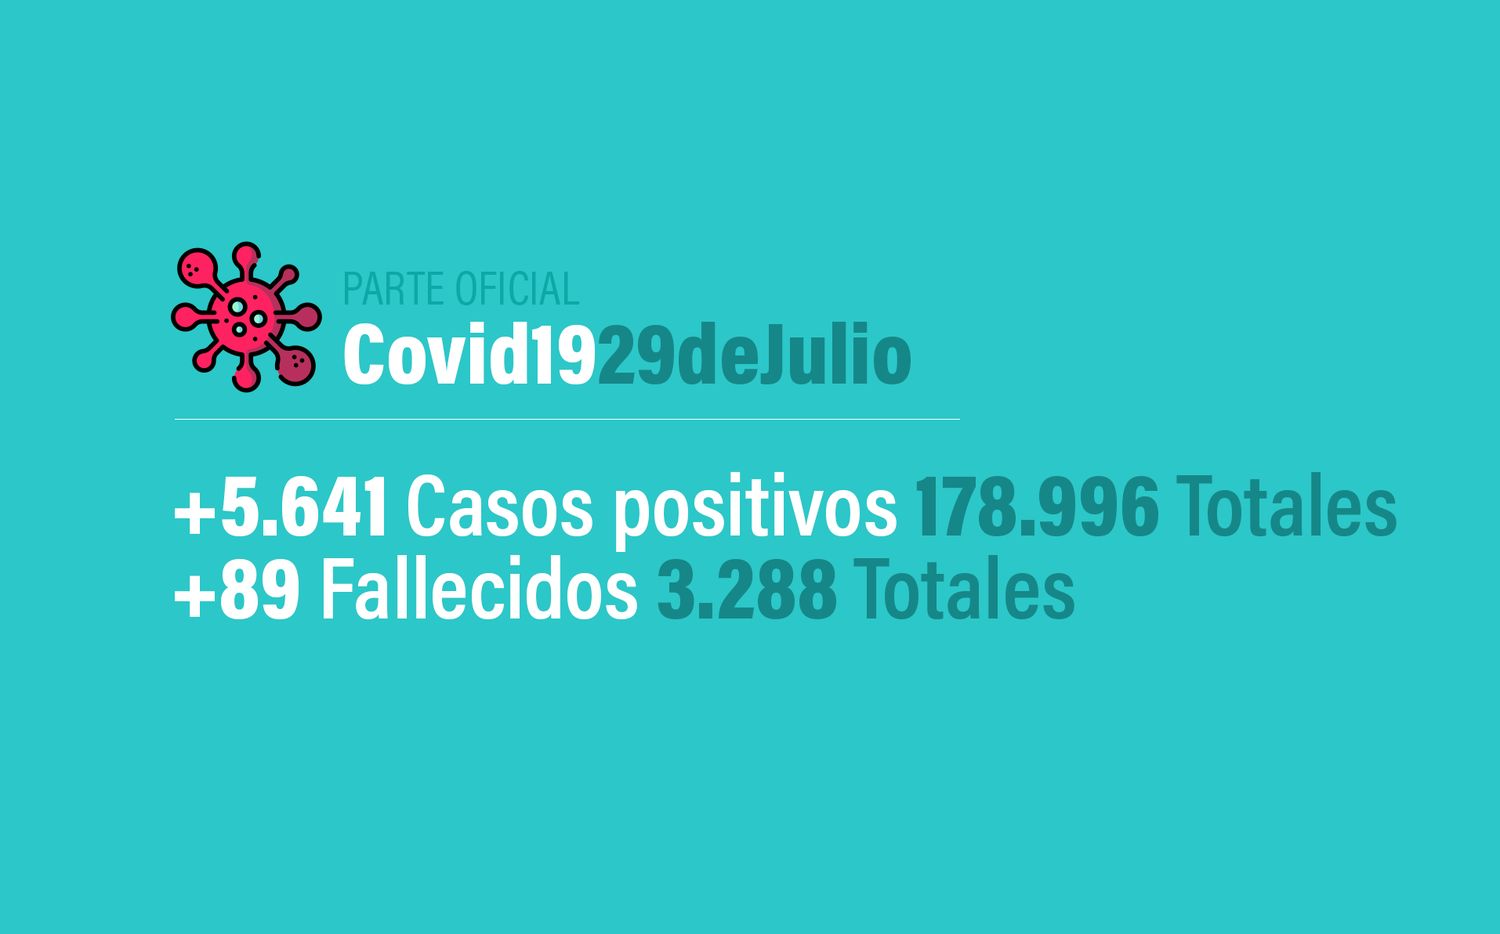 Coronavirus en Argentina: 5641 nuevos casos, 178996 confirmados, 77855 recuperados y 3288 muertes, al 29 de julio